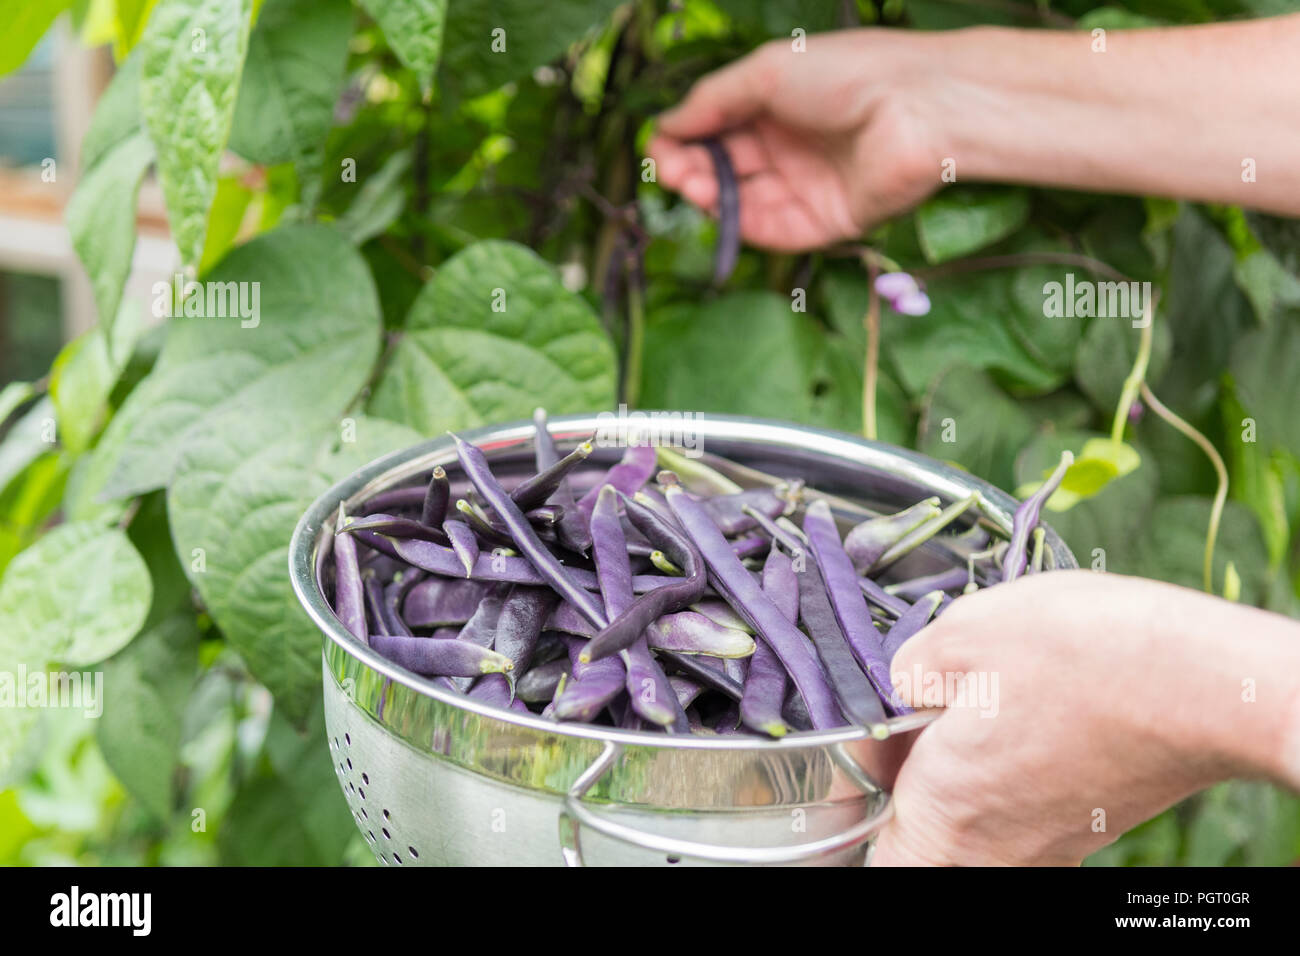 Recogiendo la escalada frijoles cosse violette - phaseolus vulgaris - desde el jardín - UK Foto de stock